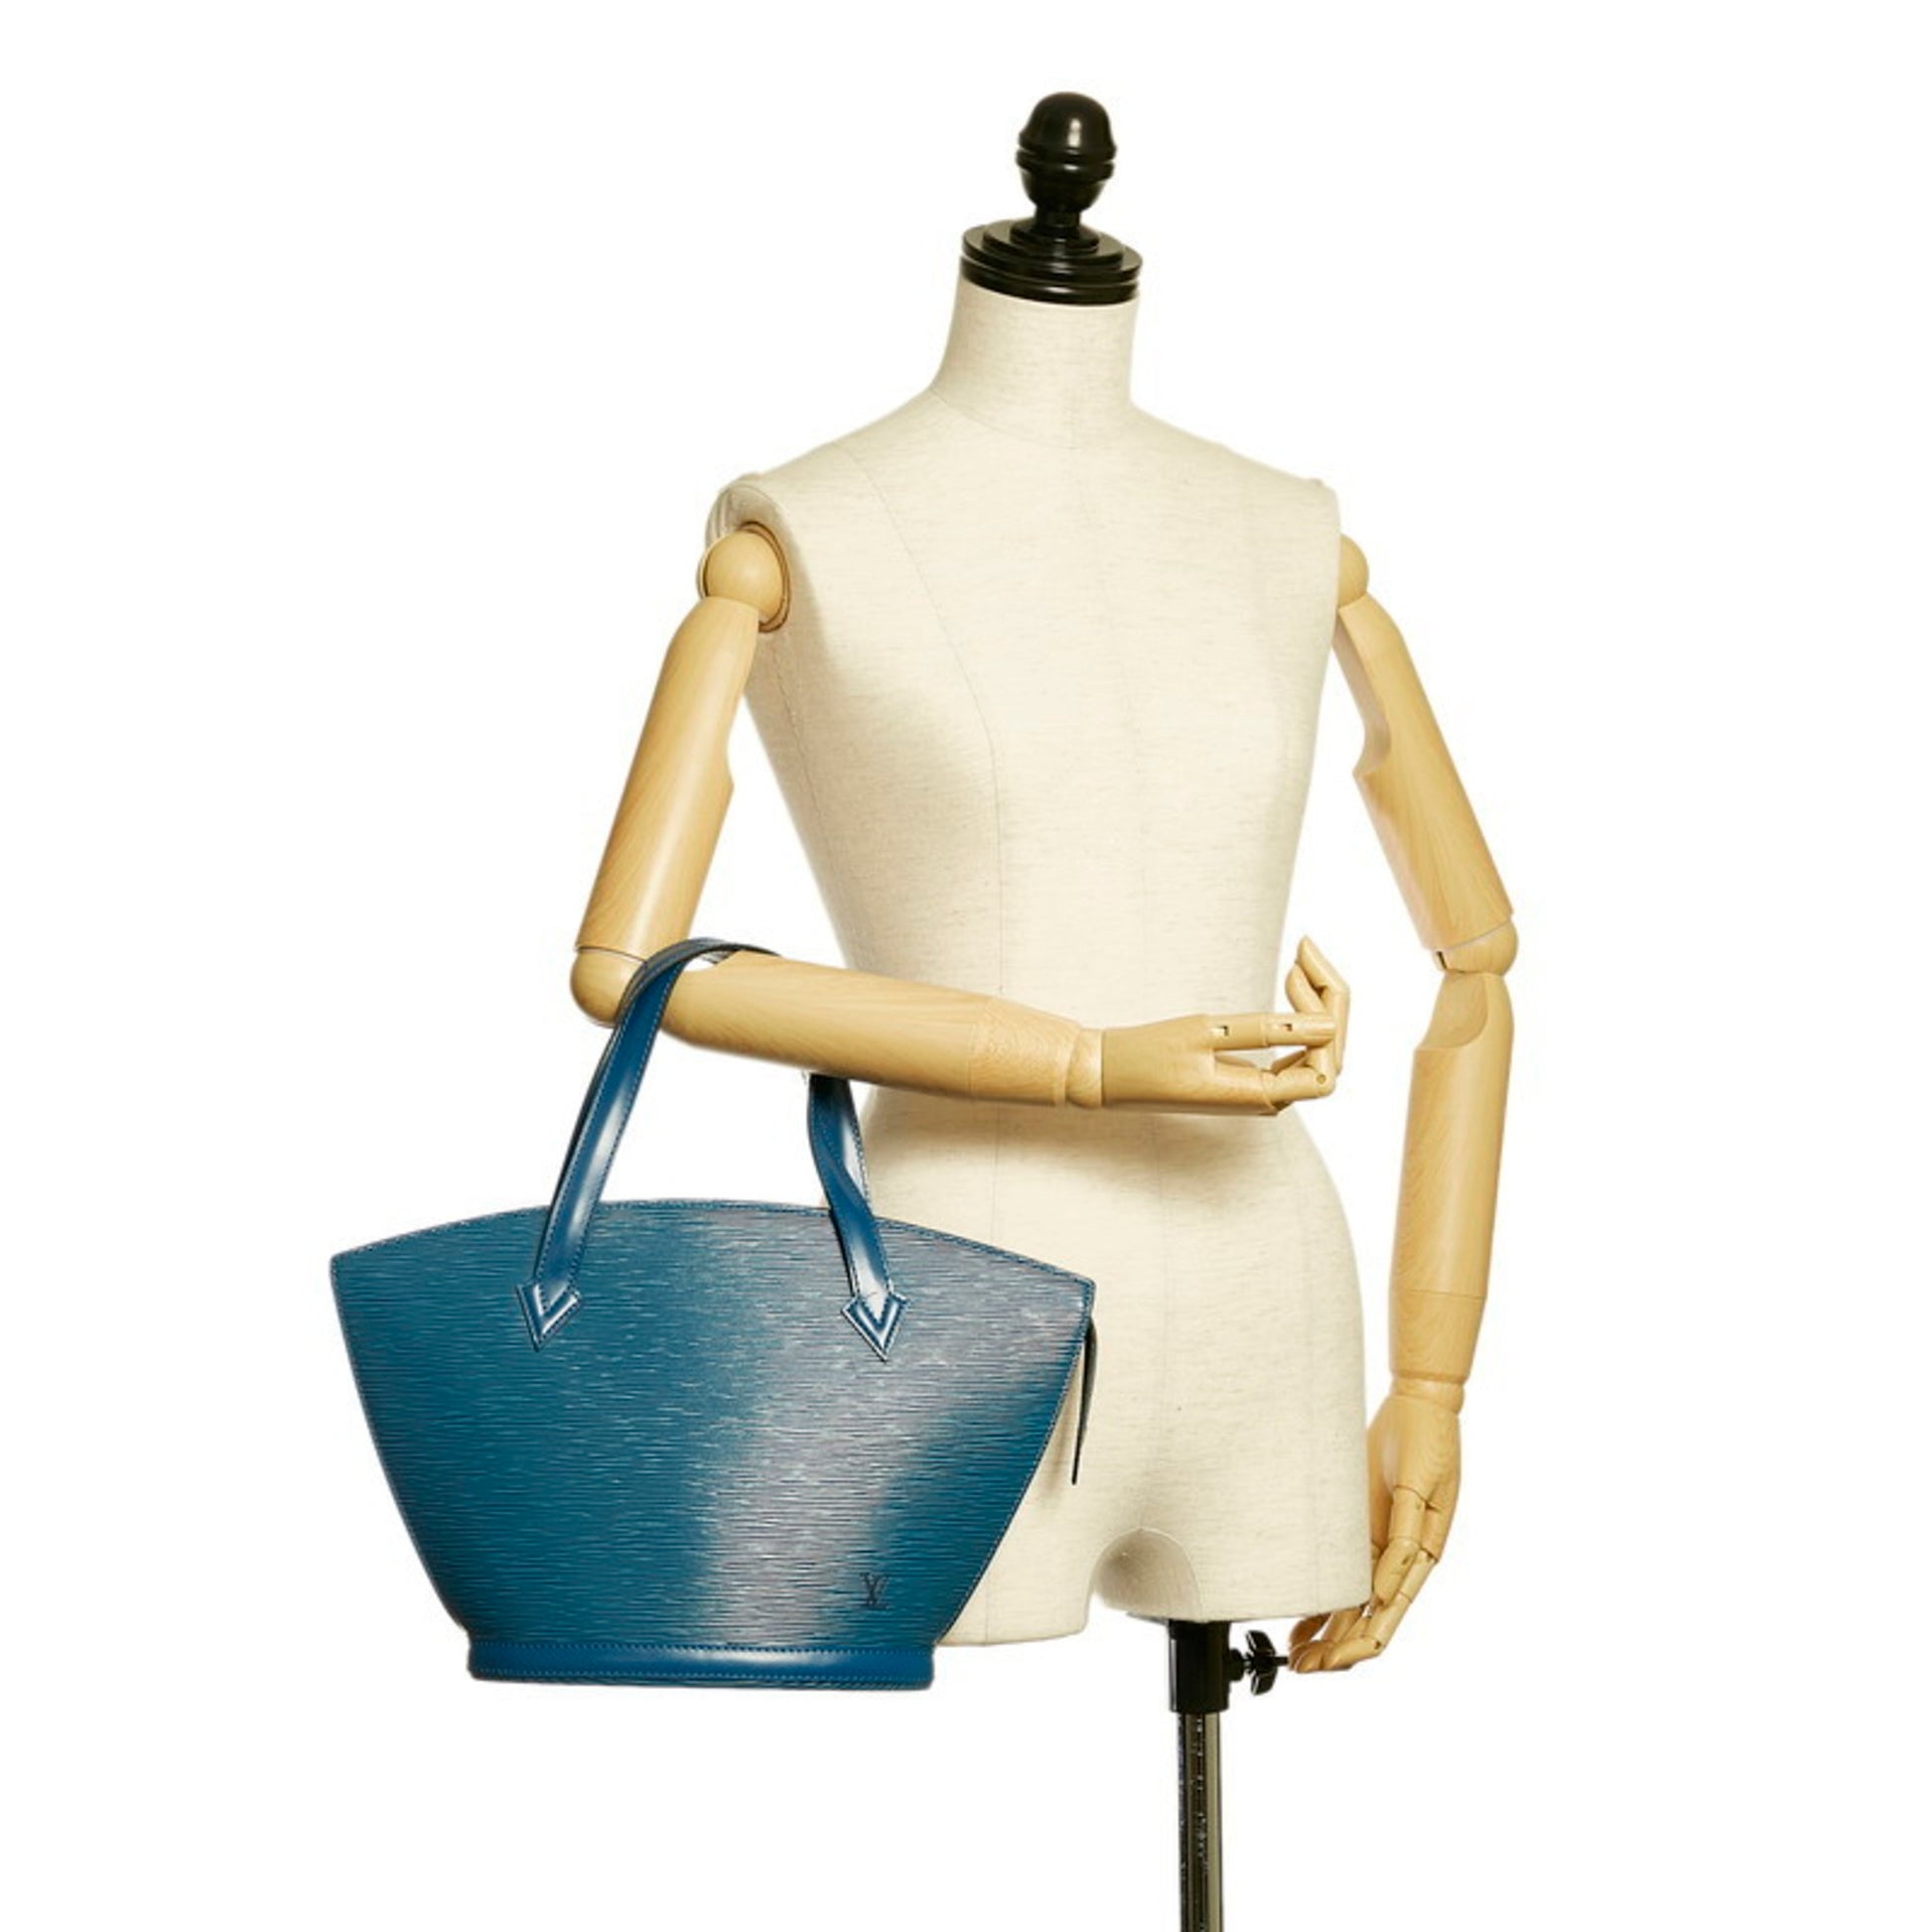 LOUIS VUITTON Epi Saint Jacques Shopping Shoulder Bag Blue M52275